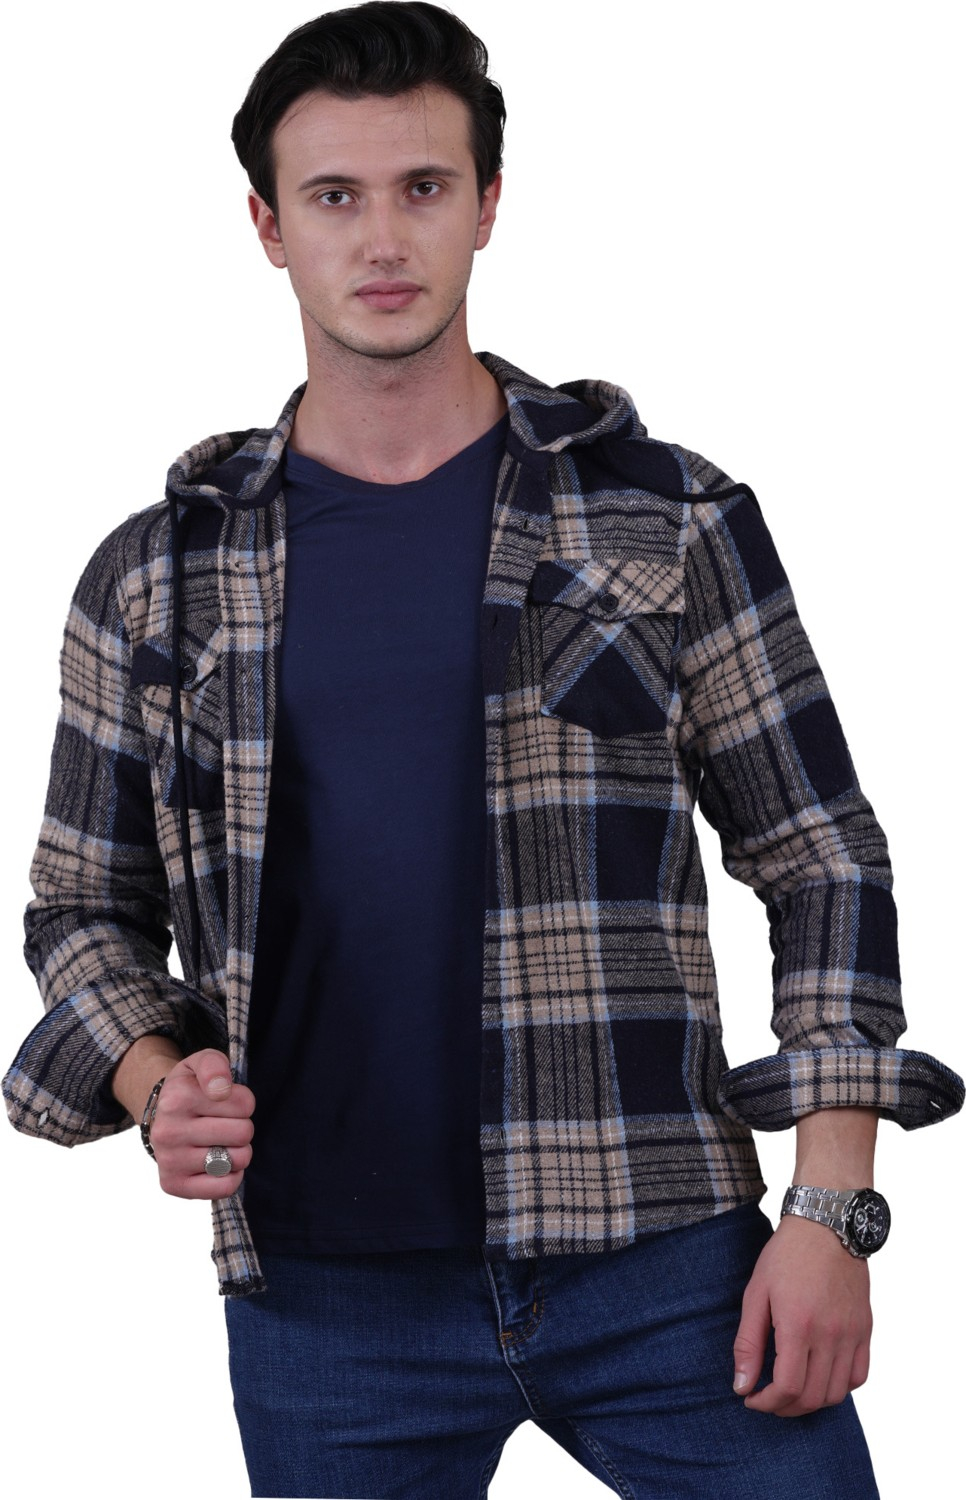 Эксклюзивная клетчатая рубашка-жакет с капюшоном и двумя карманами из шерсти на зиму.